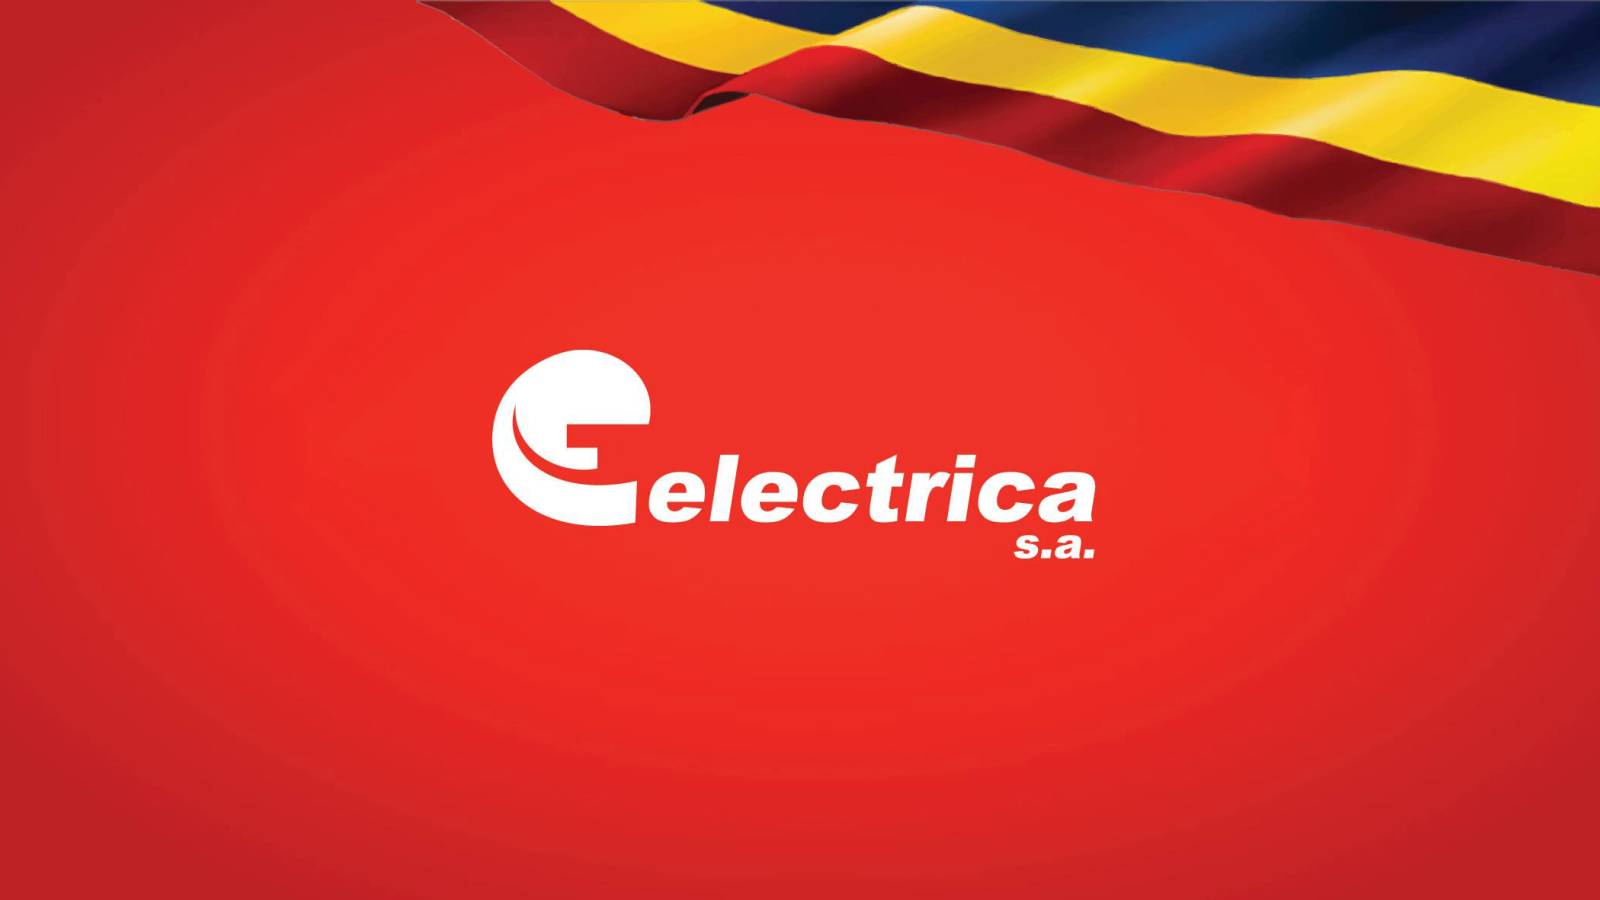 Electrica Officielle oplysninger VIGTIGE SIDSTE MINUTE-foranstaltninger rettet mod rumænske kunder